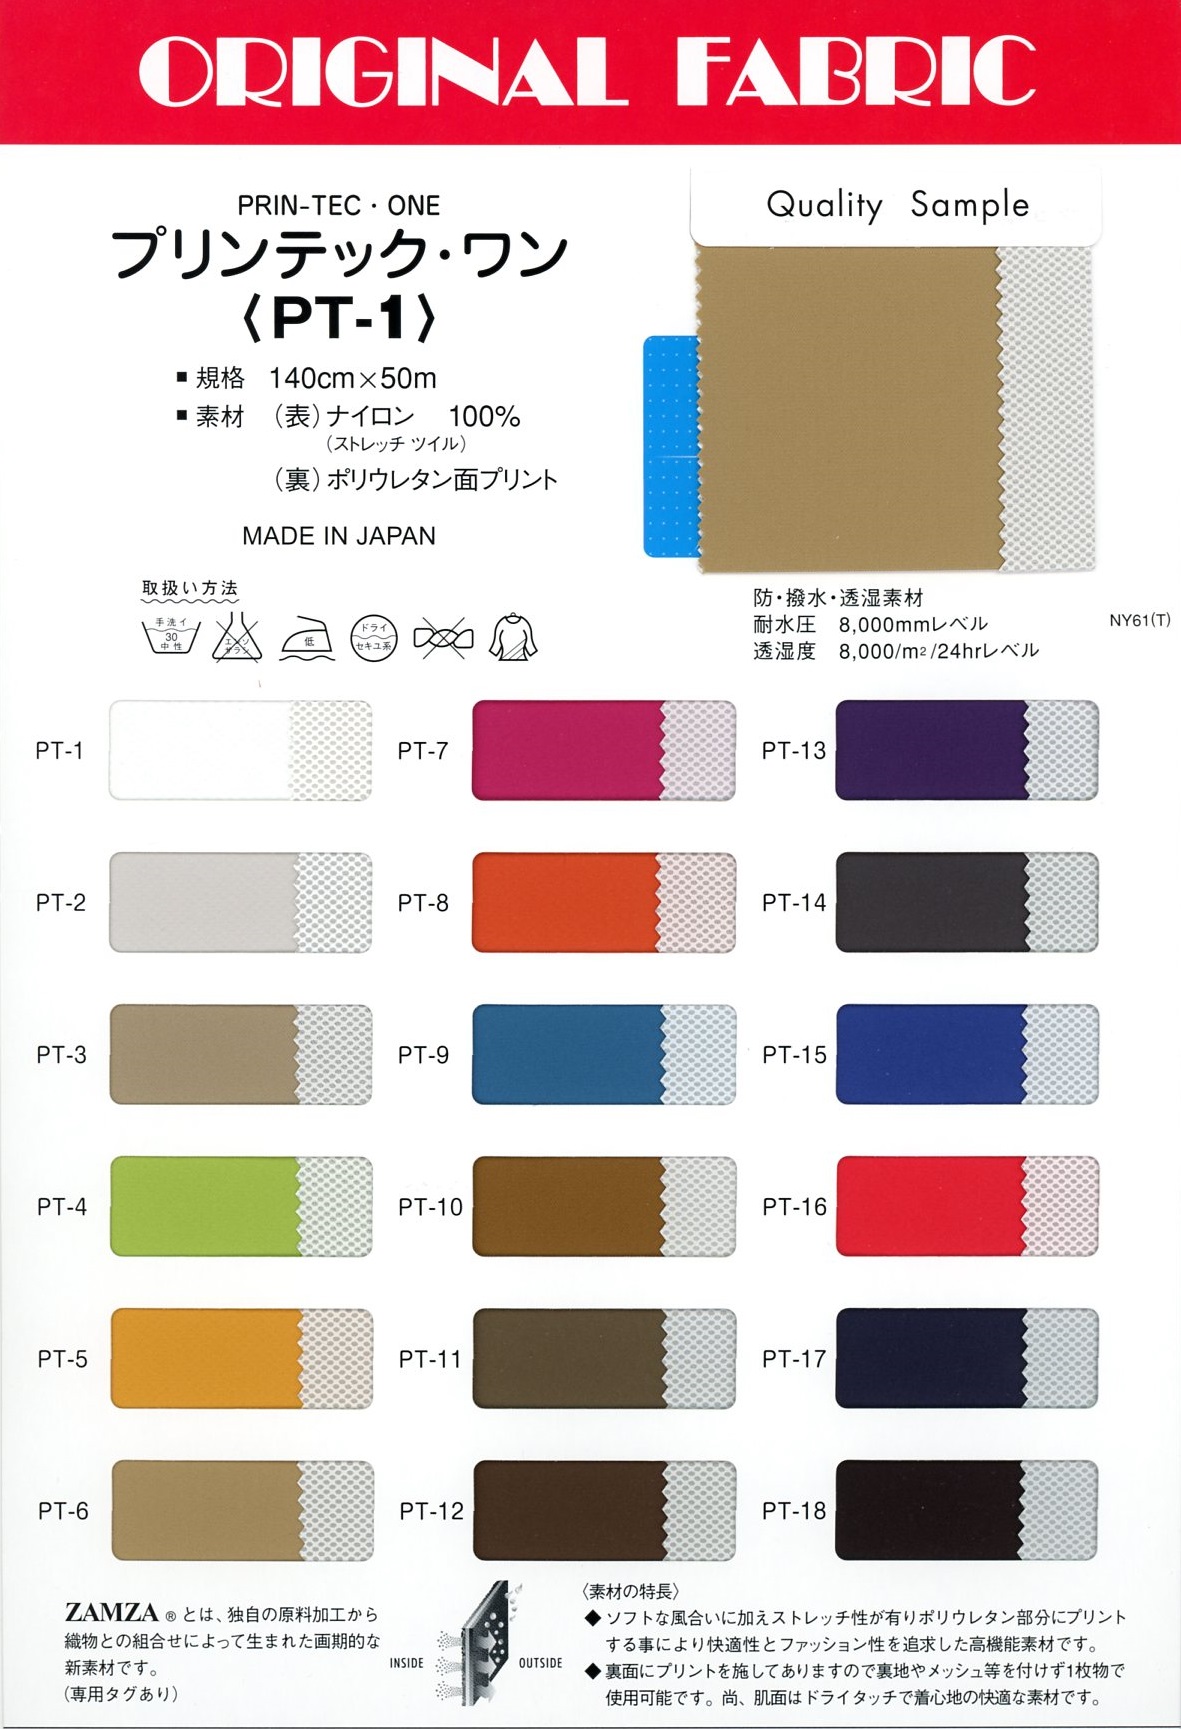 PT1 Printec One[Fabrication De Textile] Masuda